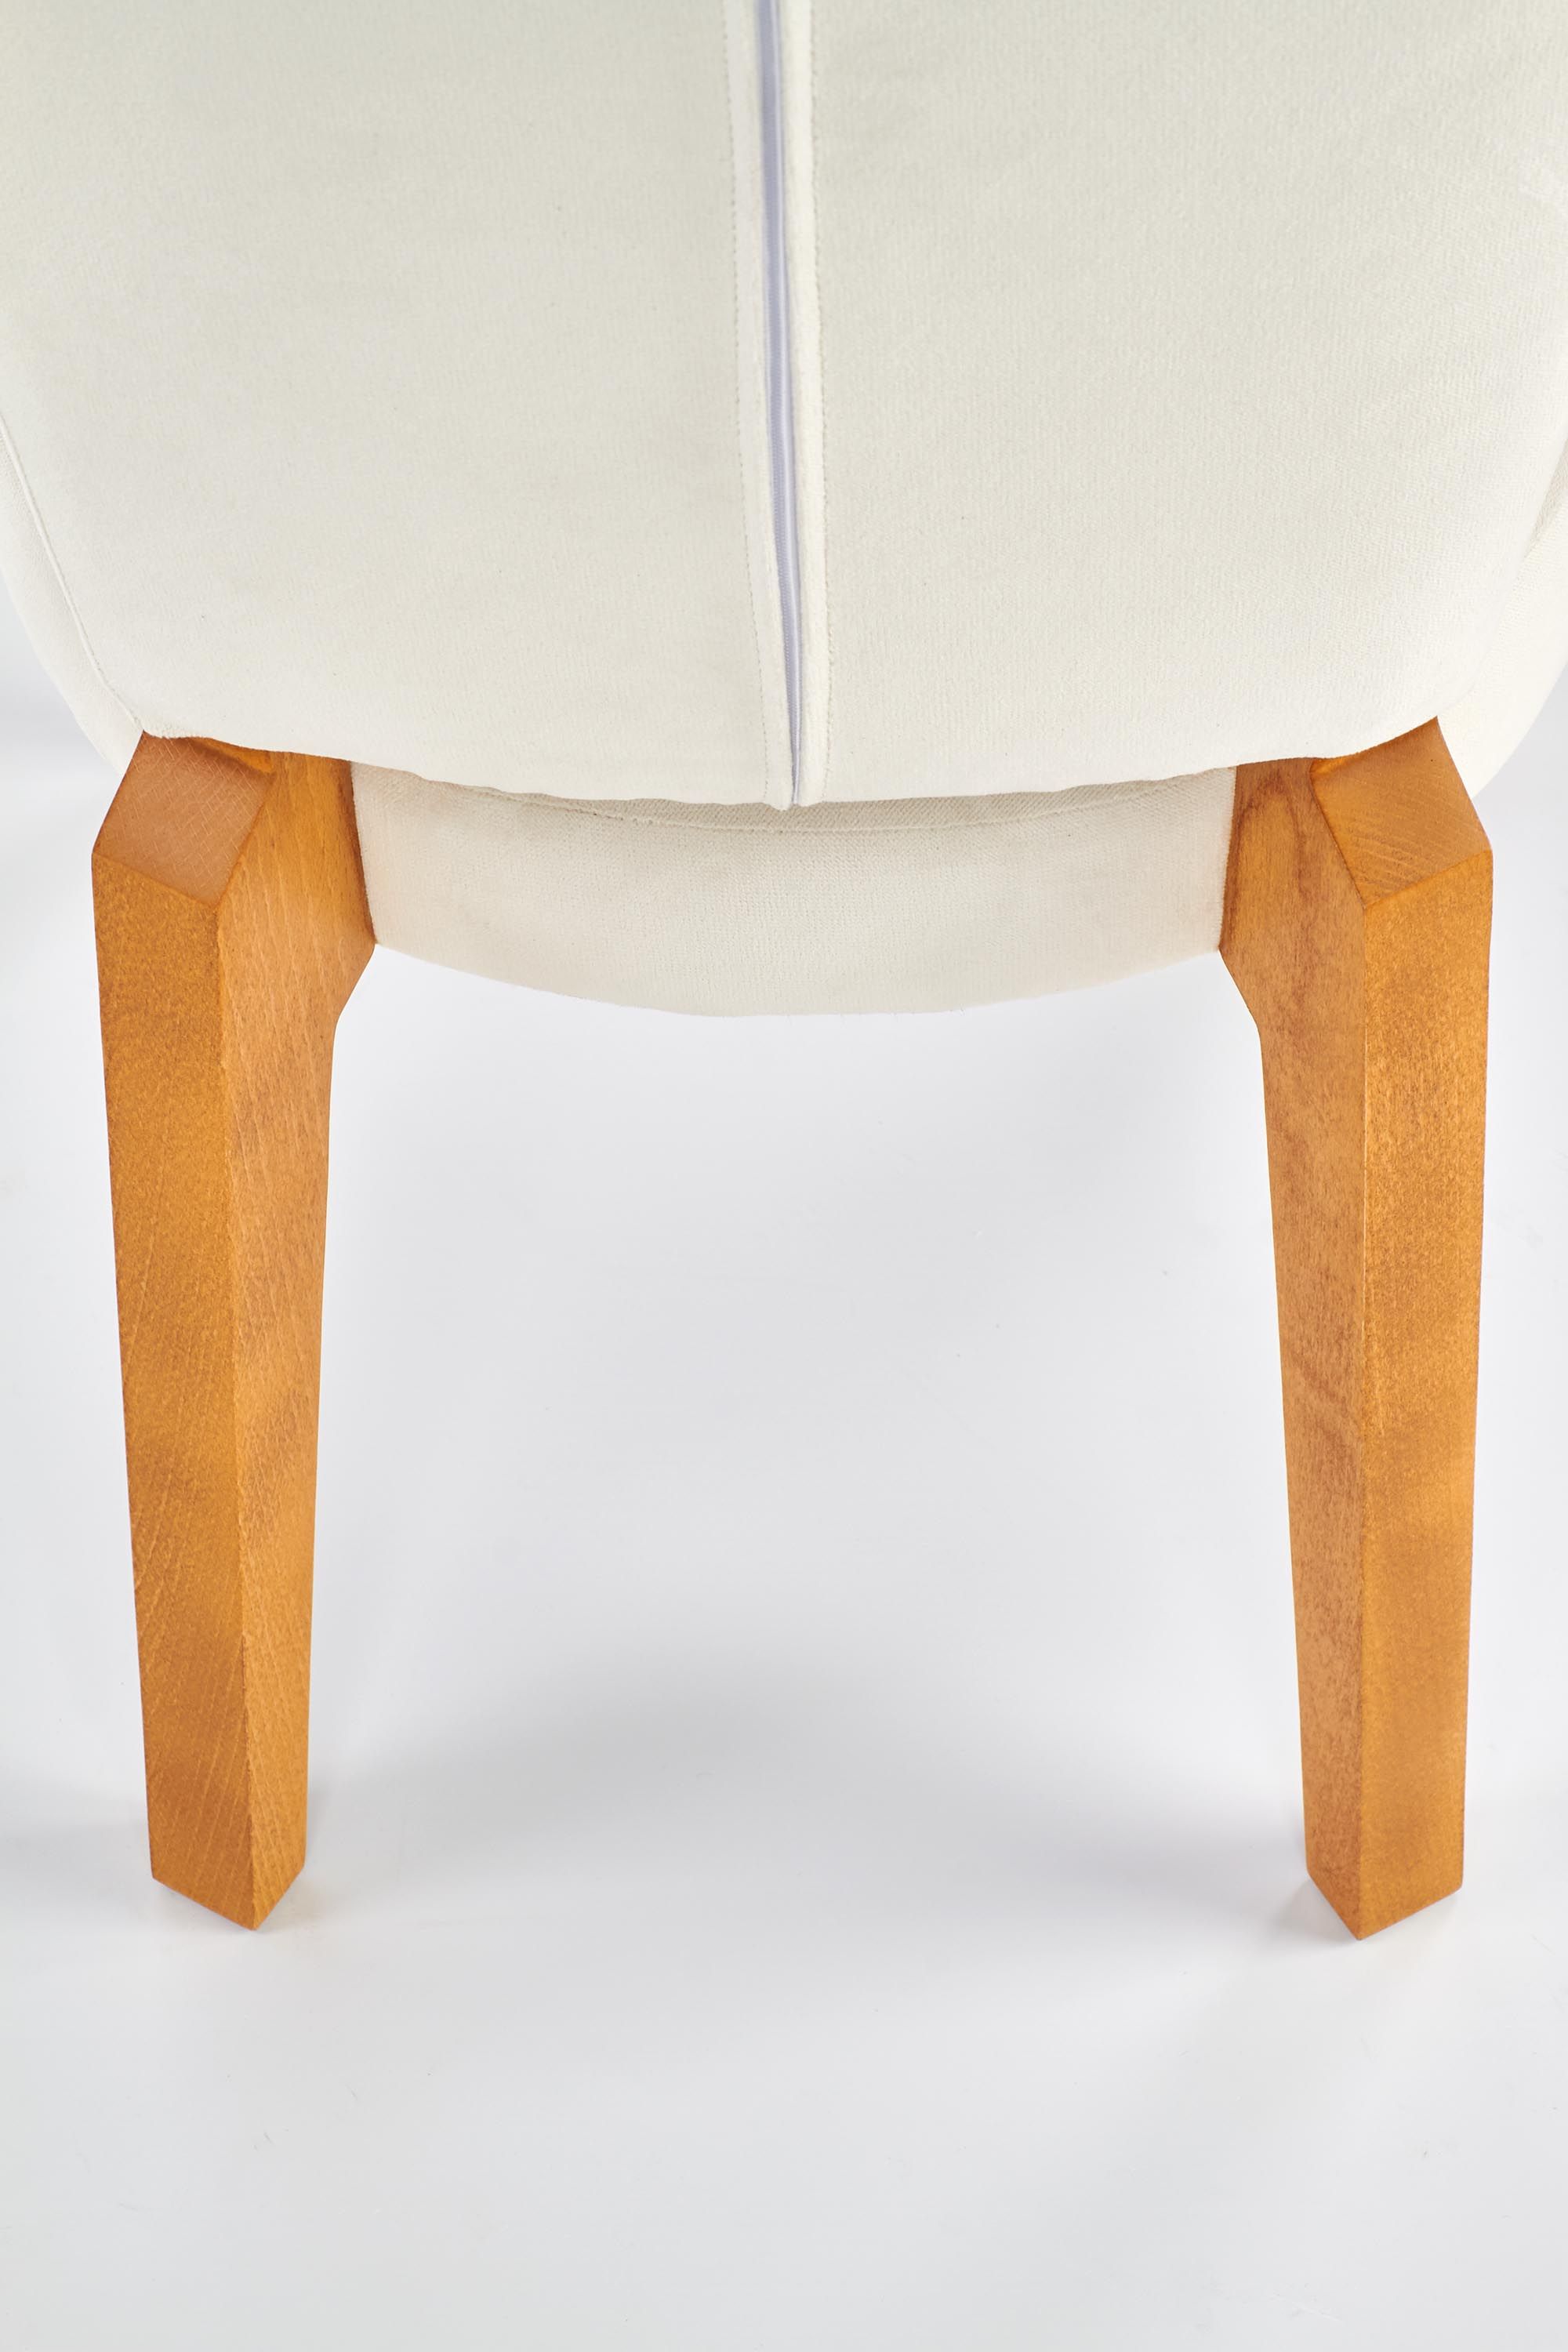 стул halmar rois (дуб медовый, ткань кремовый)